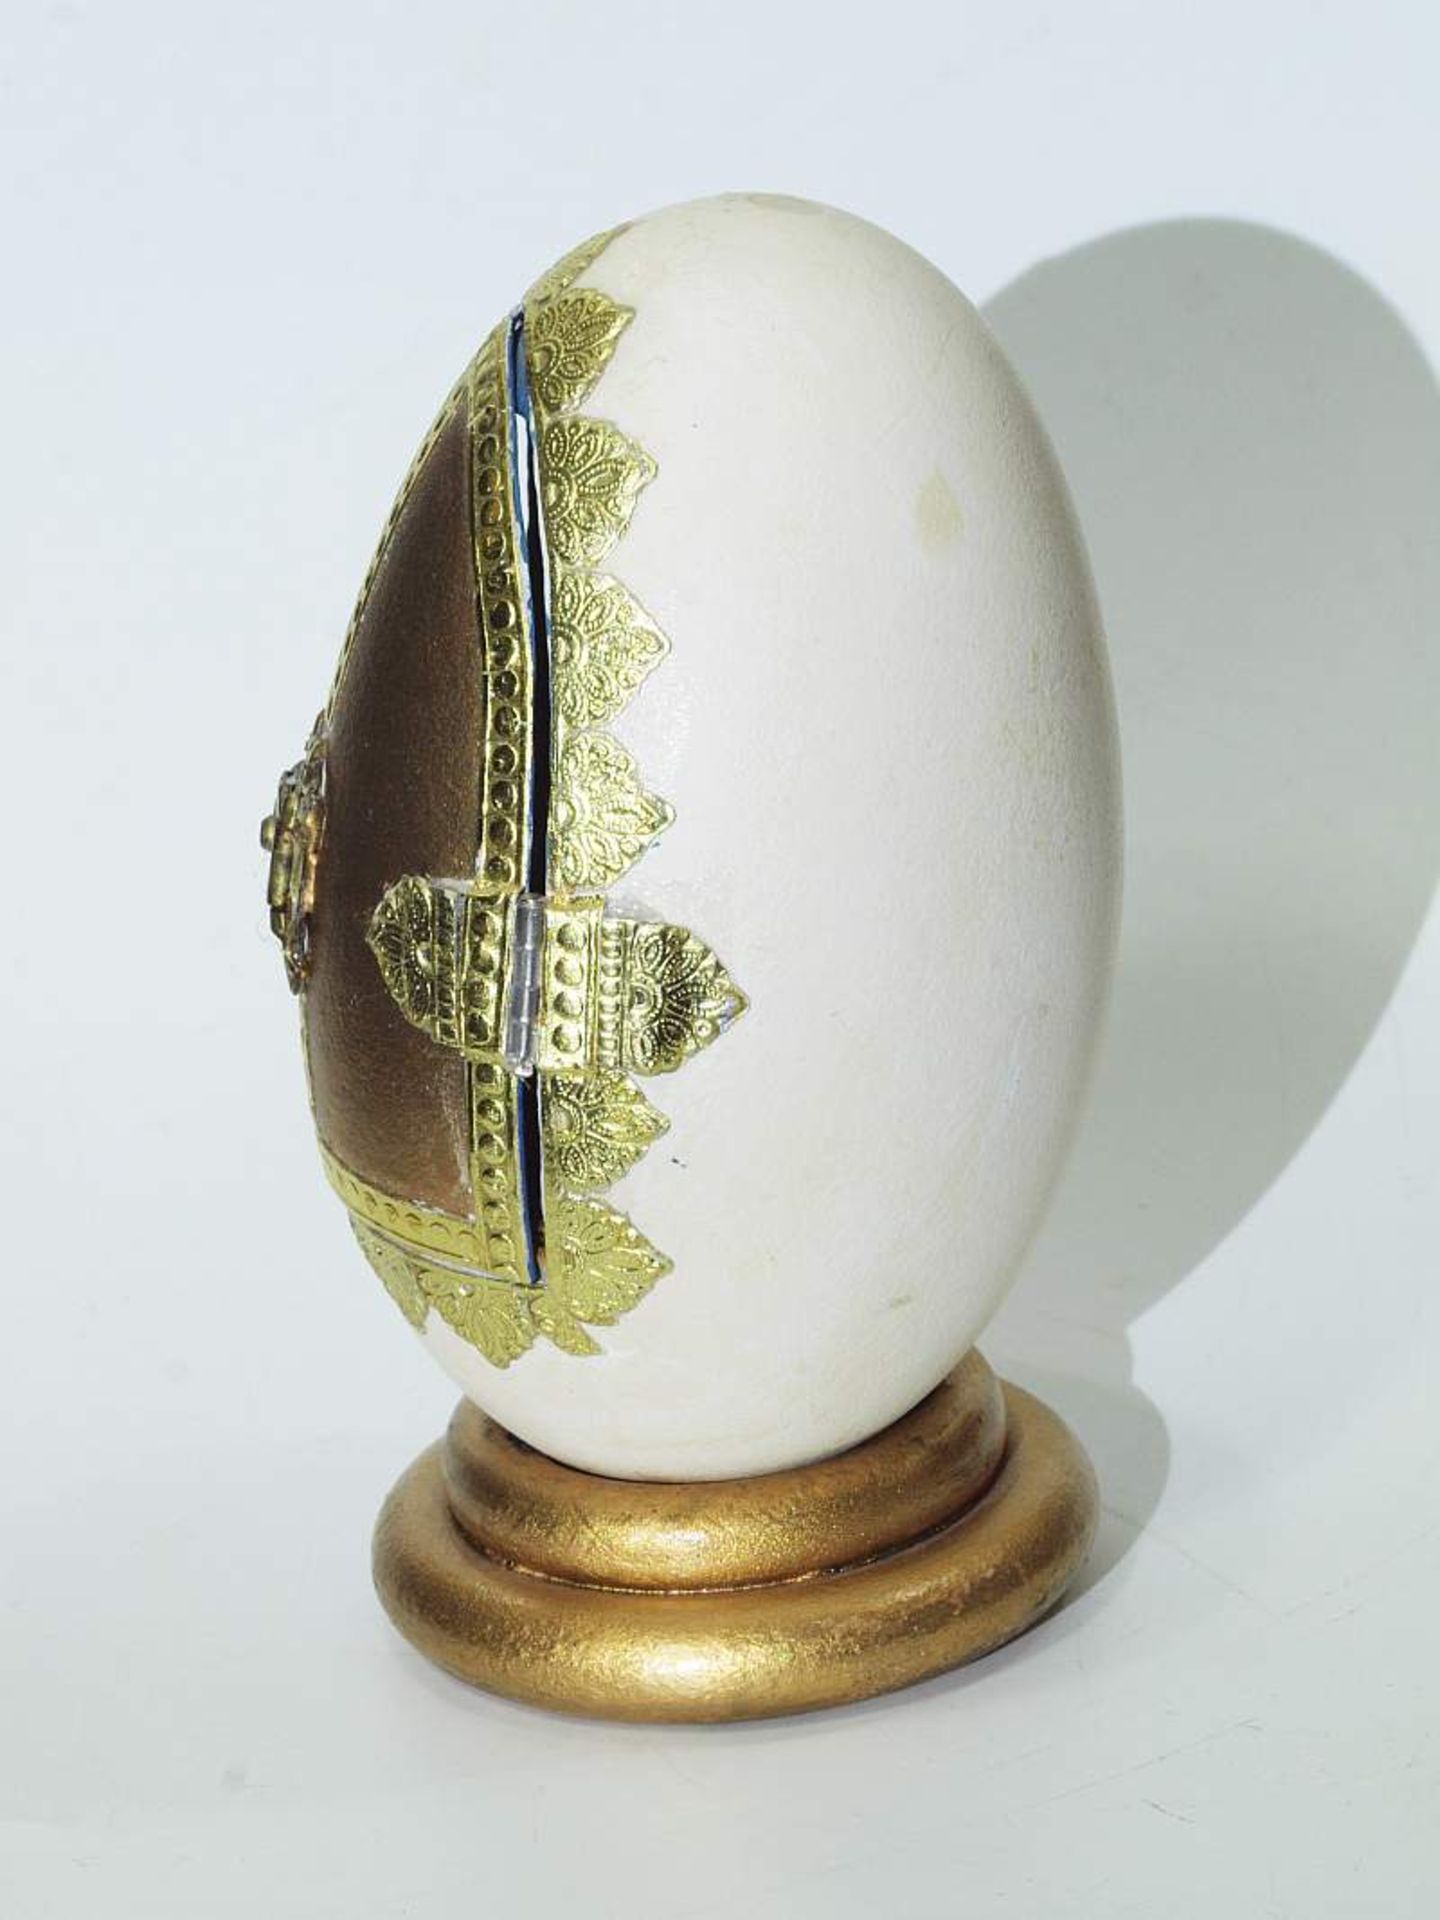 Krippenszene in Ei Krippenszene in Ei. 20. Jahrhundert. Vermutlich Gänseei als Krippe, dekoriert mit - Bild 5 aus 6